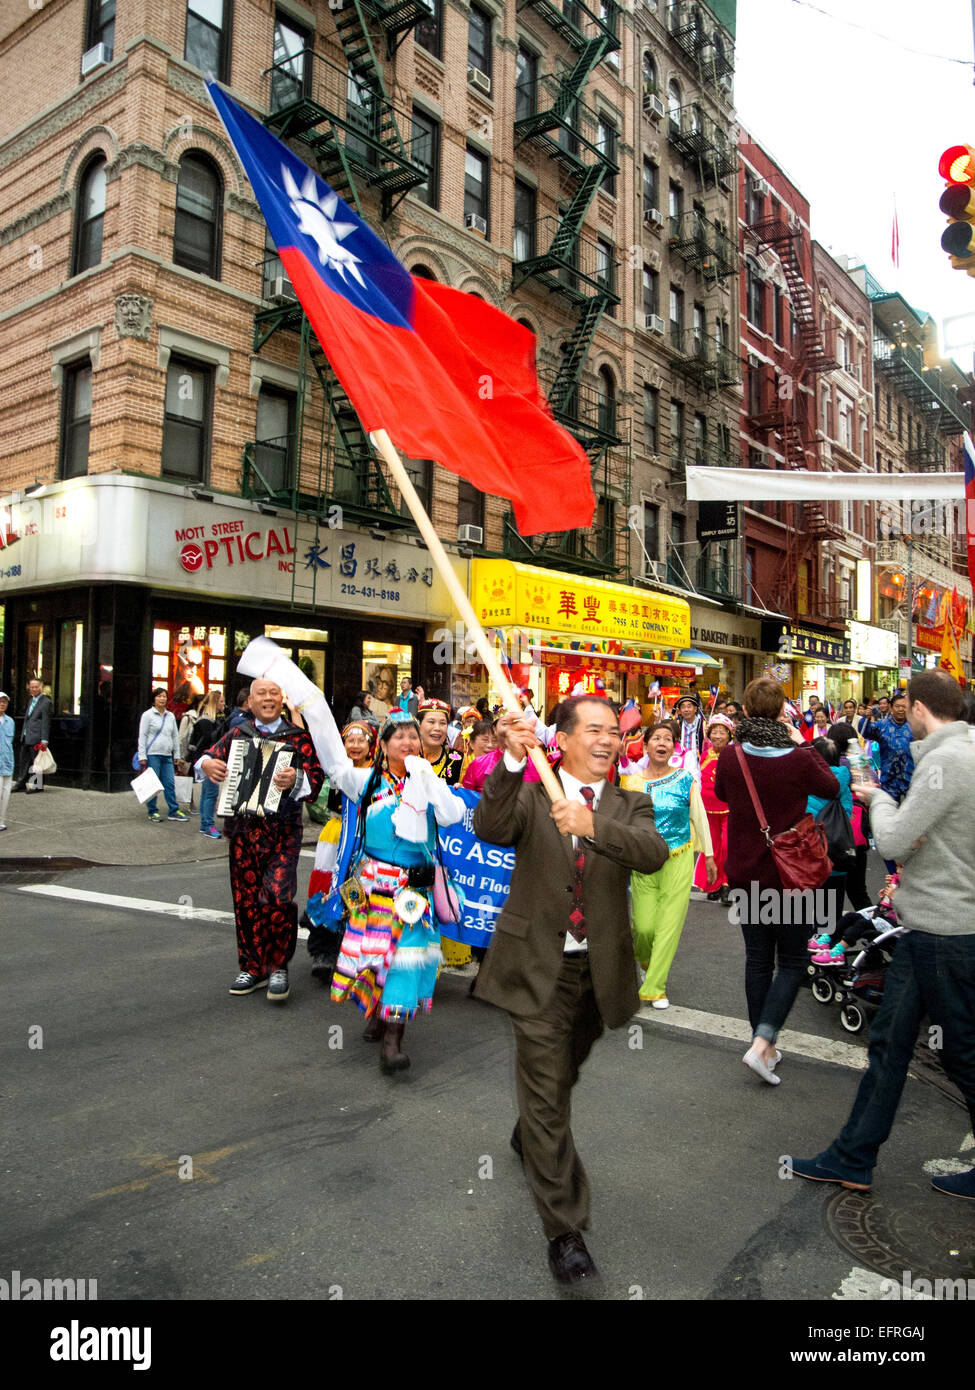 Un desfile en la calle Bayard en el Chinatown de Nueva York celebra la Kuomontang o Partido Popular Chino que gobierna la isla de Taiwán. Nota banderas estadounidenses y chinos nacionalistas. Foto de stock